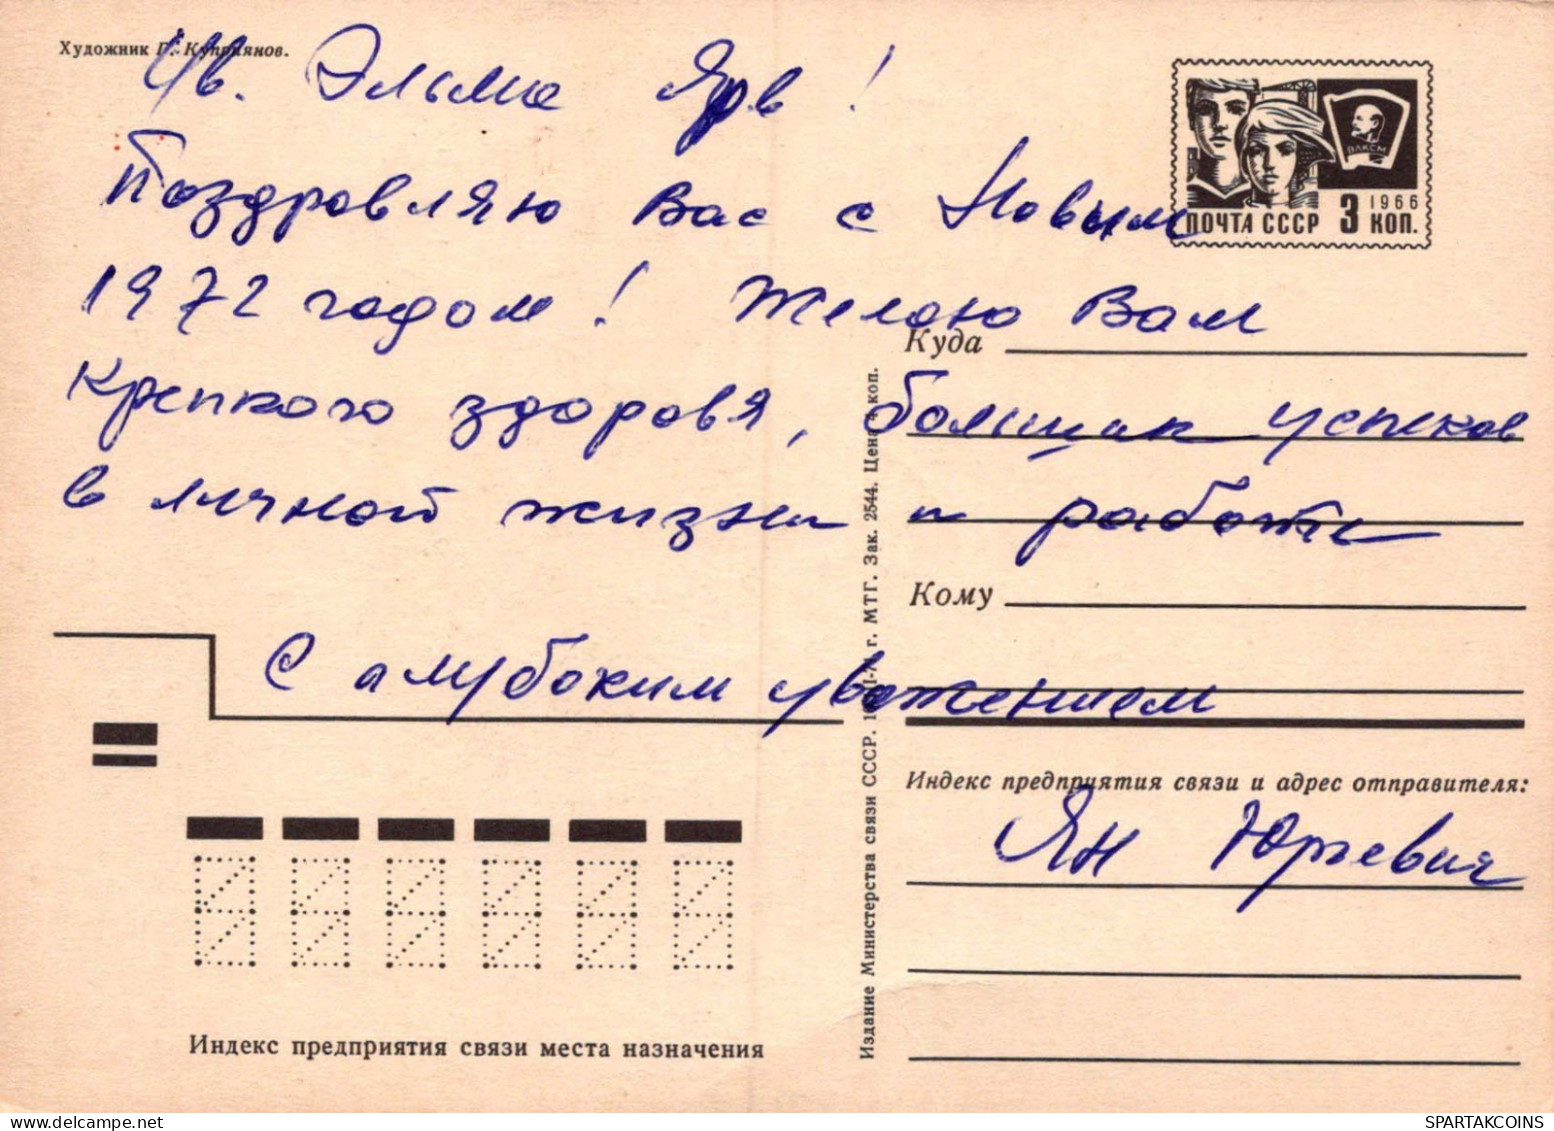 PÈRE NOËL Bonne Année Noël Vintage Carte Postale CPSM URSS #PAU345.FR - Santa Claus